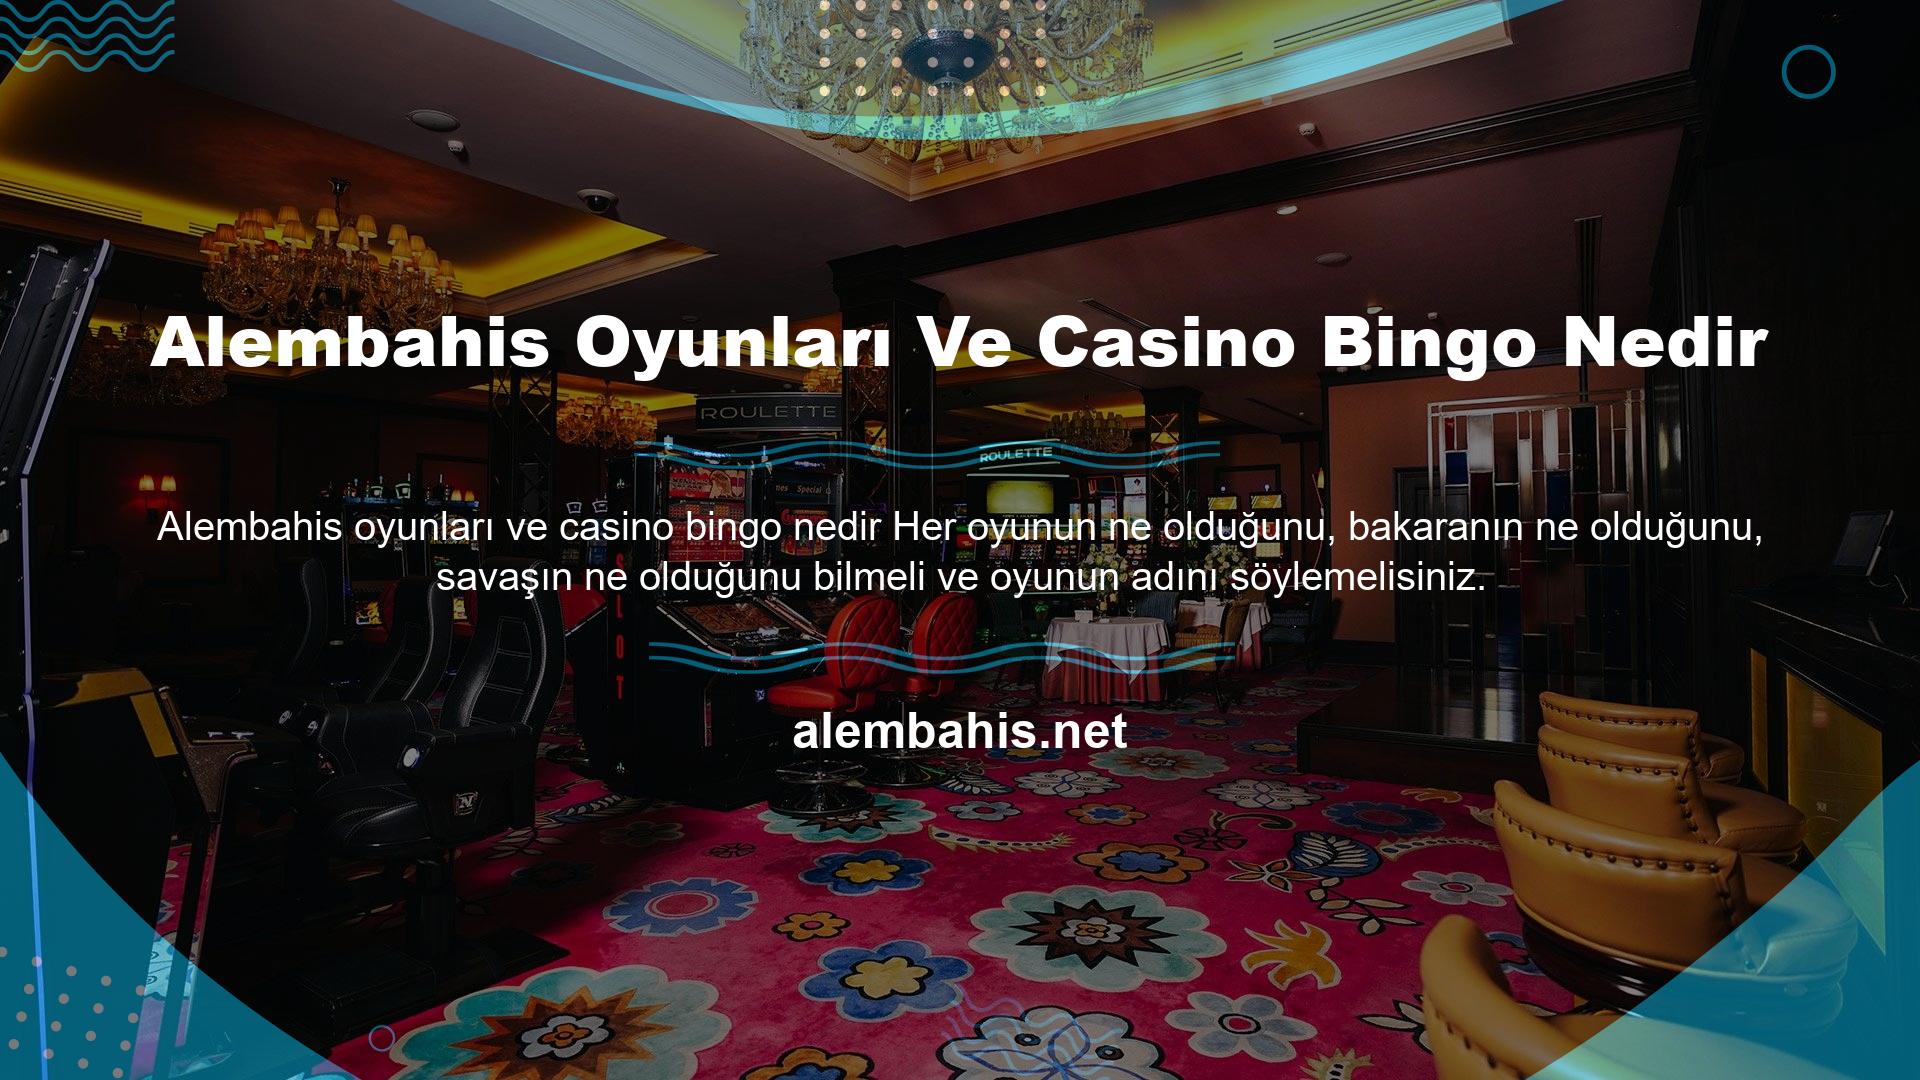 Alembahis Oyunları Ve Casino Bingo Nedir